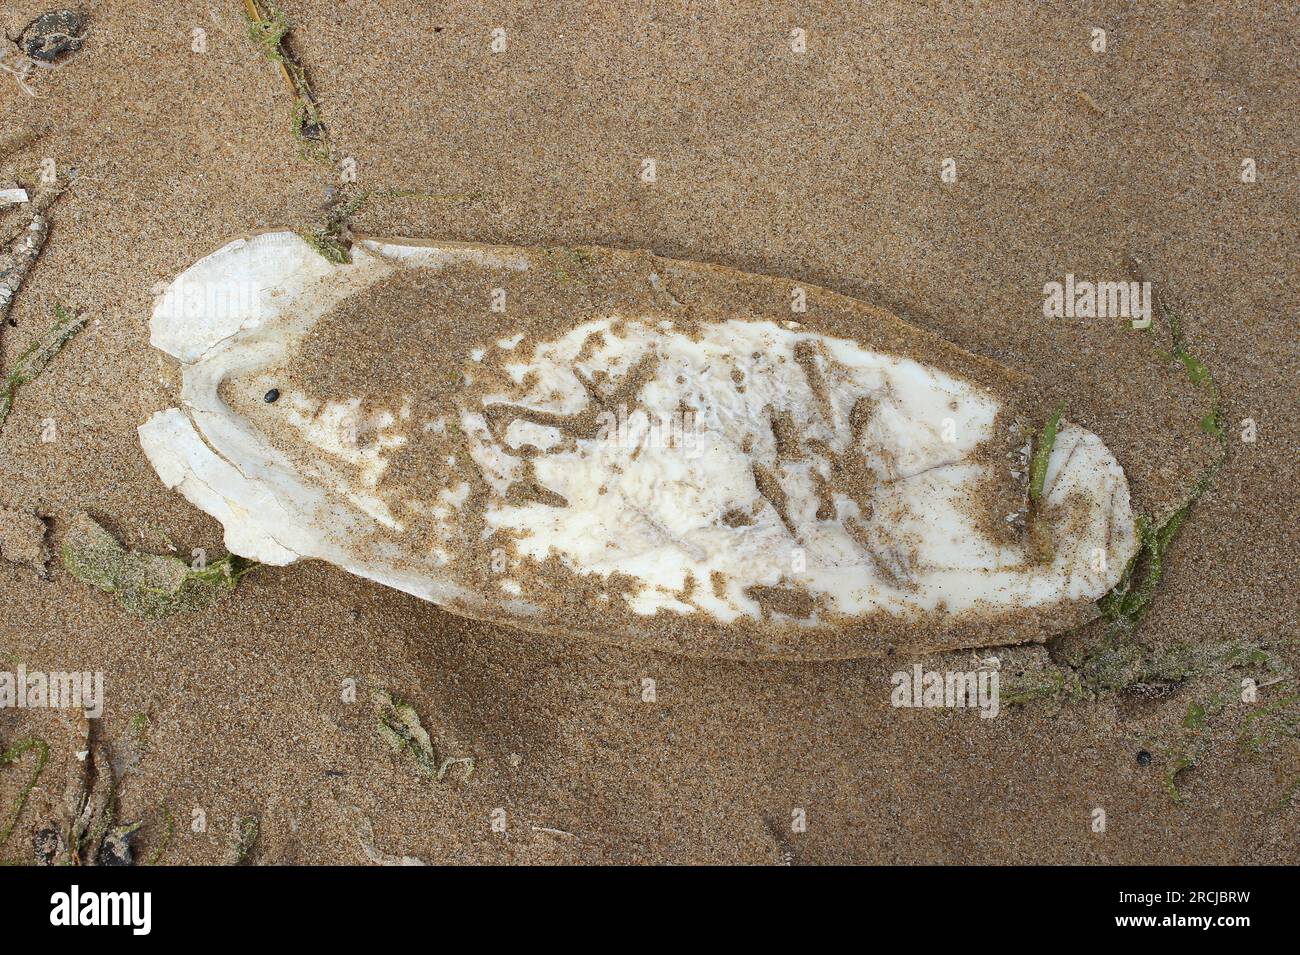 Cuttlefish Bone Washed Up On Beach Stock Photo